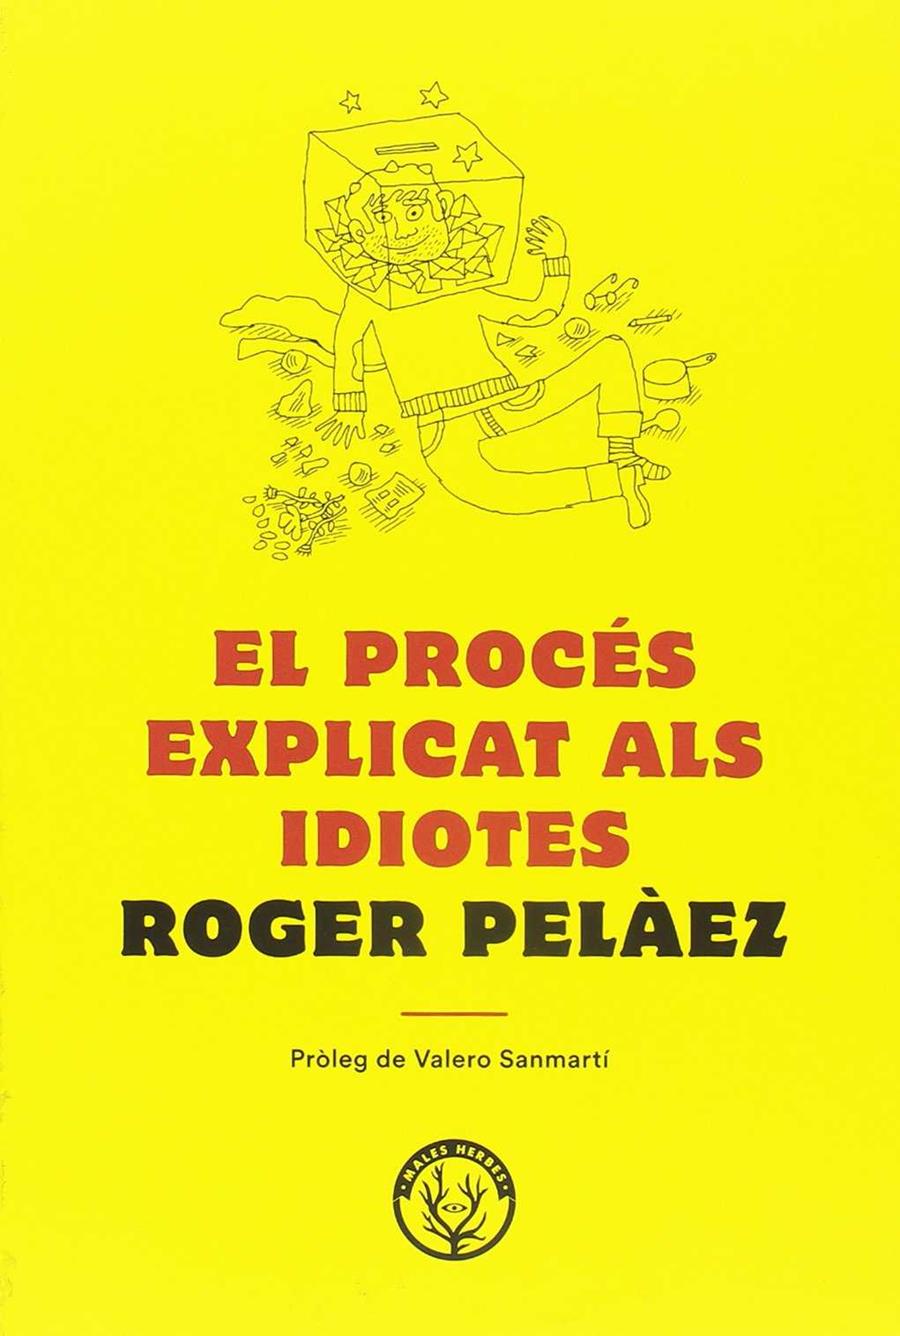 El procés explicat als idiotes | Peláez Viñas, Roger | Cooperativa autogestionària